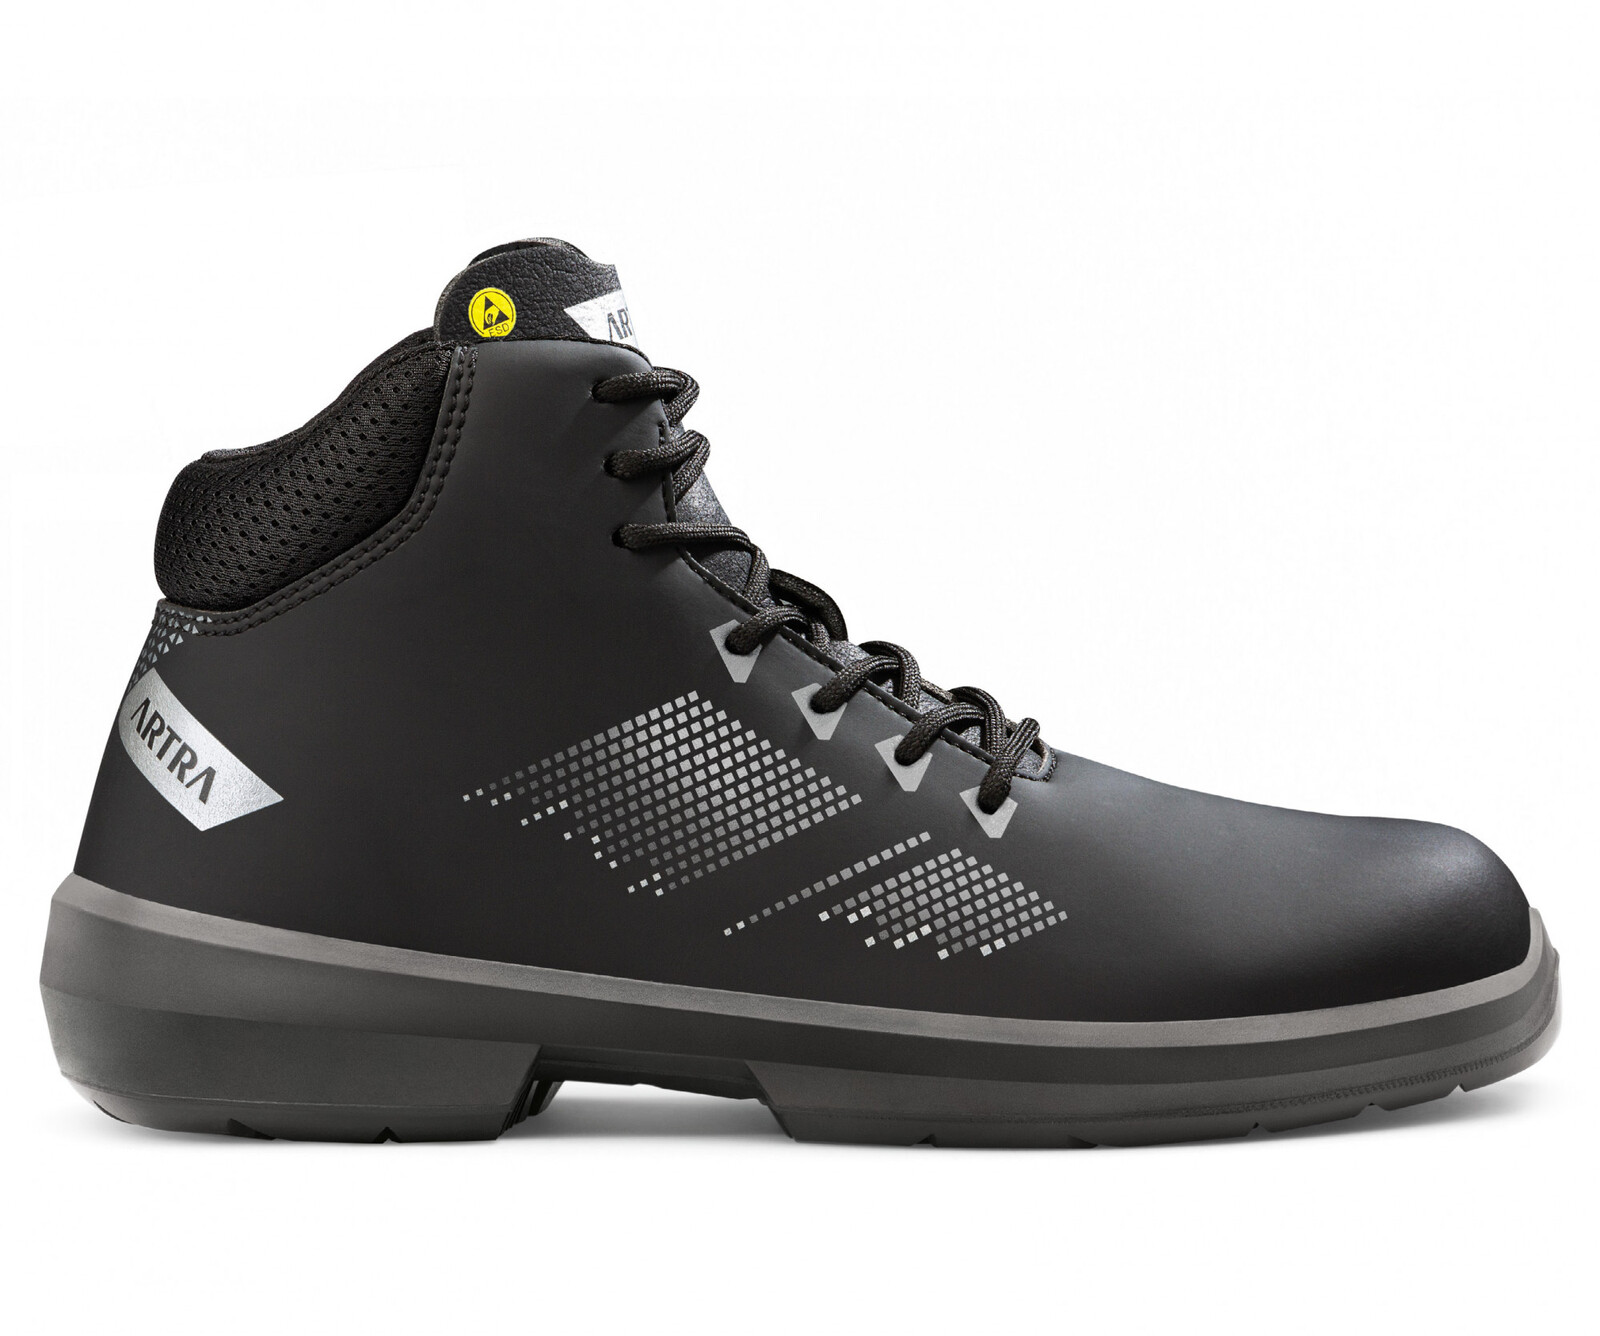 Zimná bezpečnostná členková obuv Artra Arrival 855 676560 S3 CI SRC ESD MF - veľkosť: 48, farba: čierna/sivá